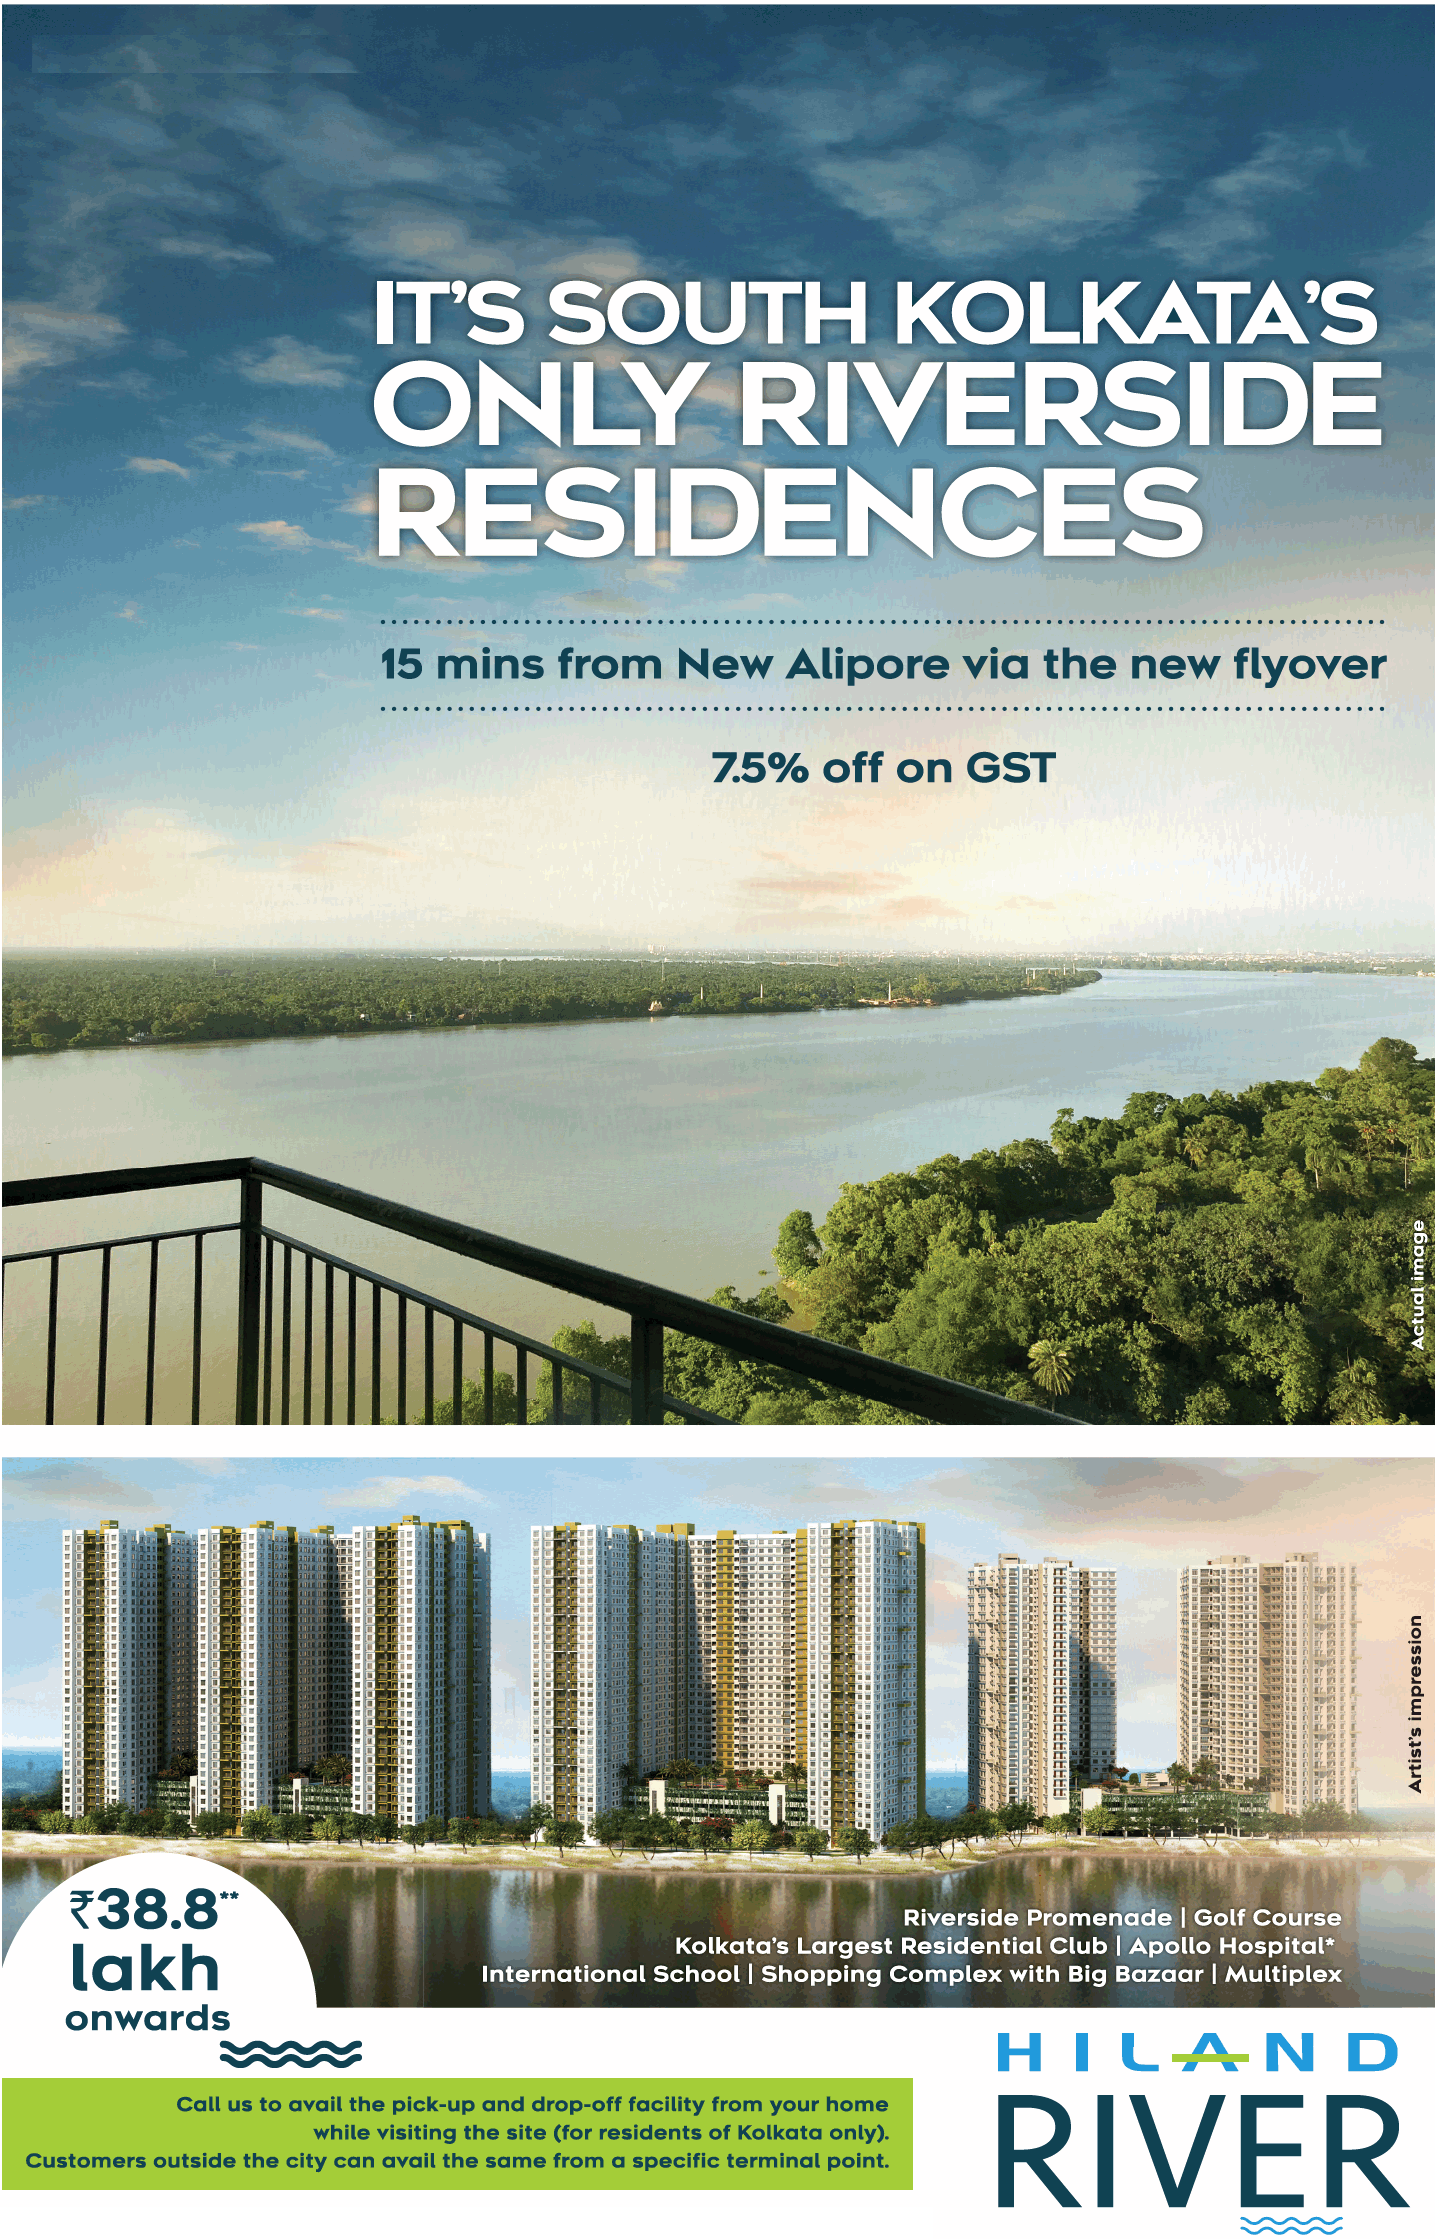 Hiland River launching riverside residences in Kolkata